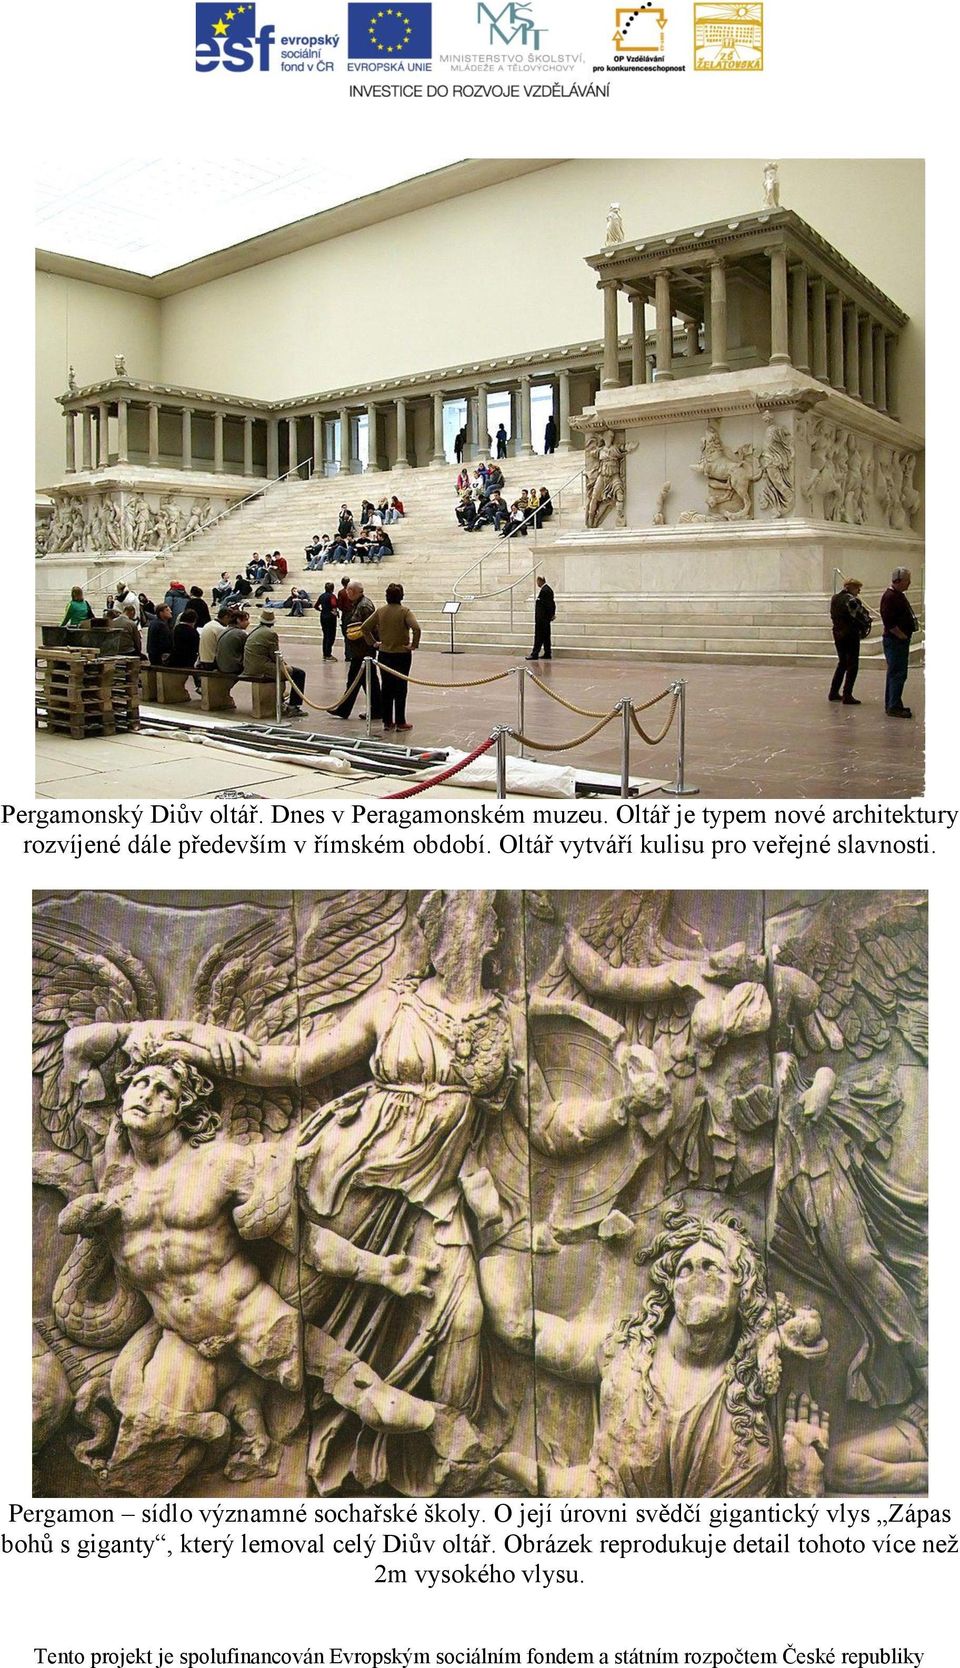 Oltář vytváří kulisu pro veřejné slavnosti. Pergamon sídlo významné sochařské školy.